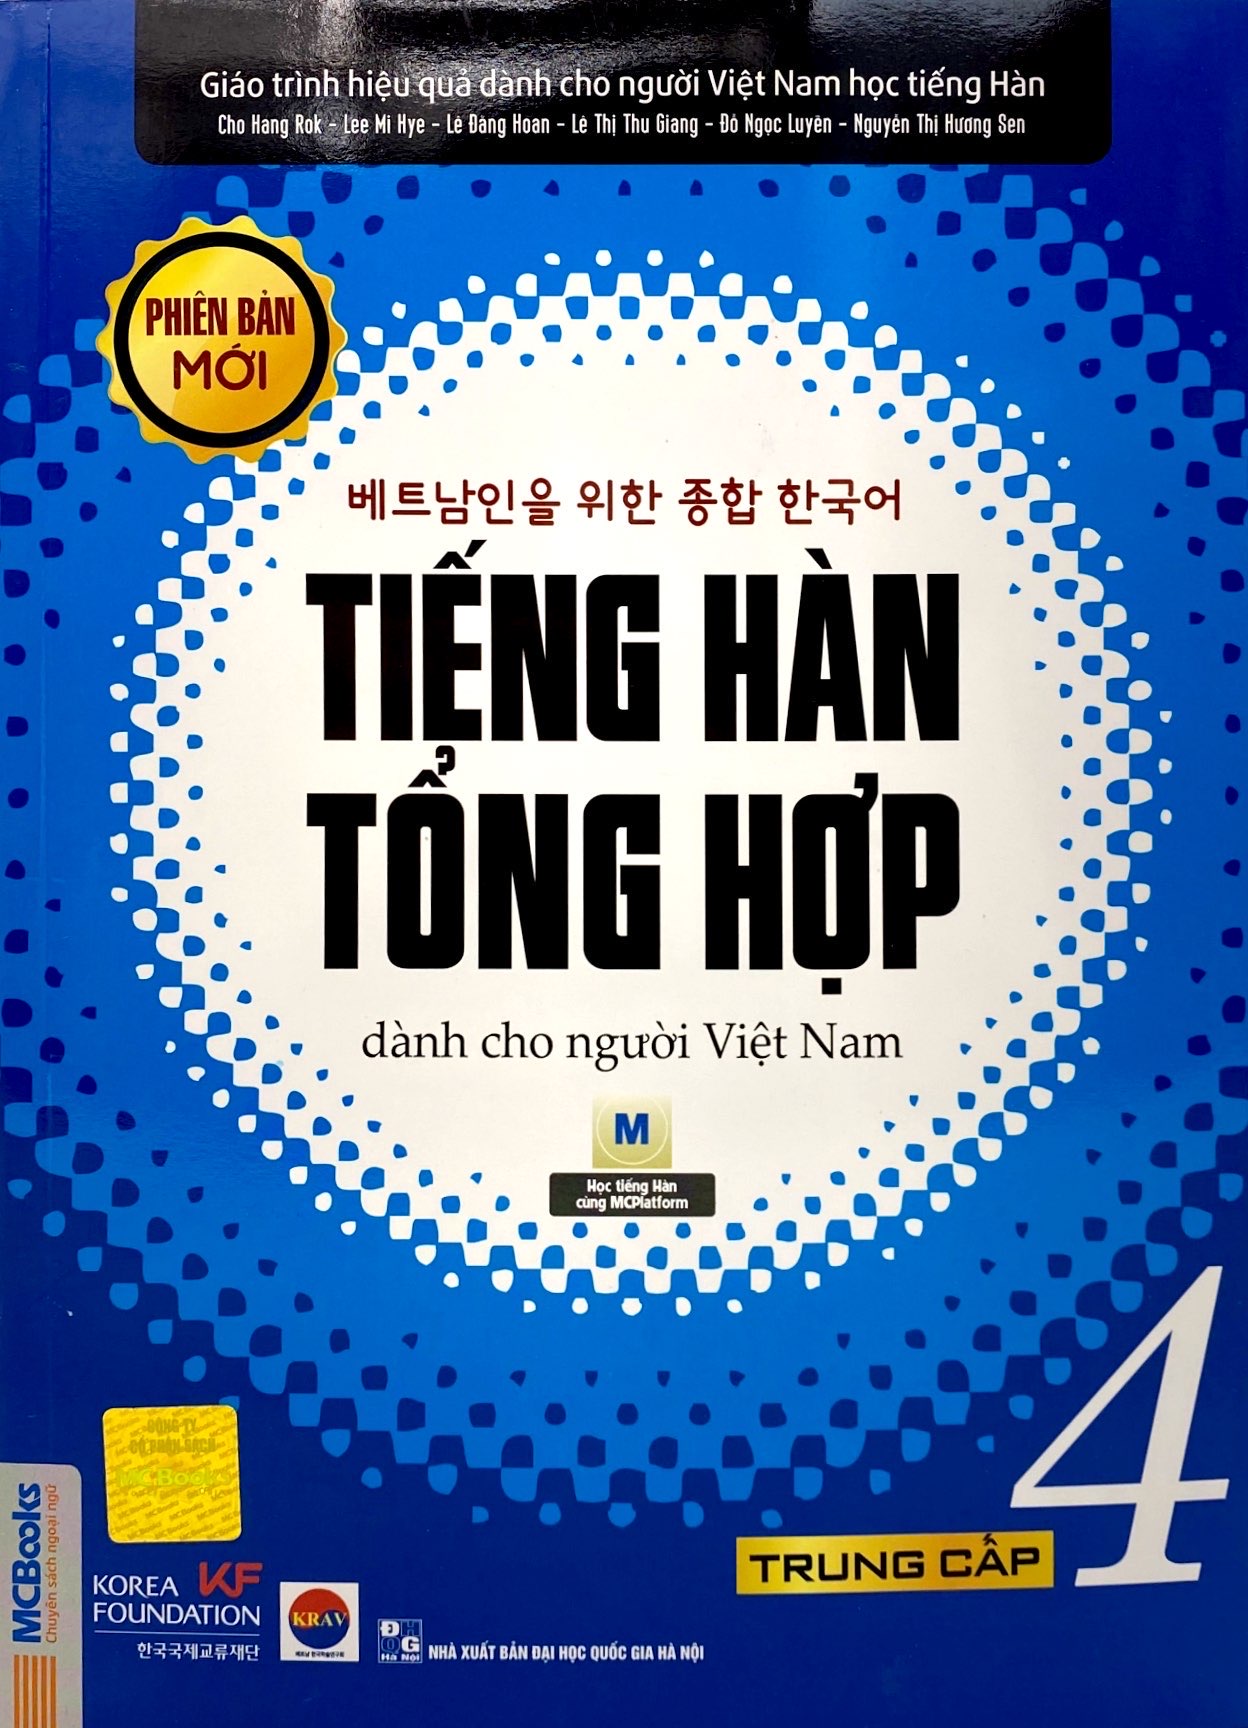 Sách Giáo Trình Tiếng Hàn Tổng Hợp Dành Cho Người Việt Nam - Trung Cấp 4 - Đen Trắng (Phiên Bản Mới)